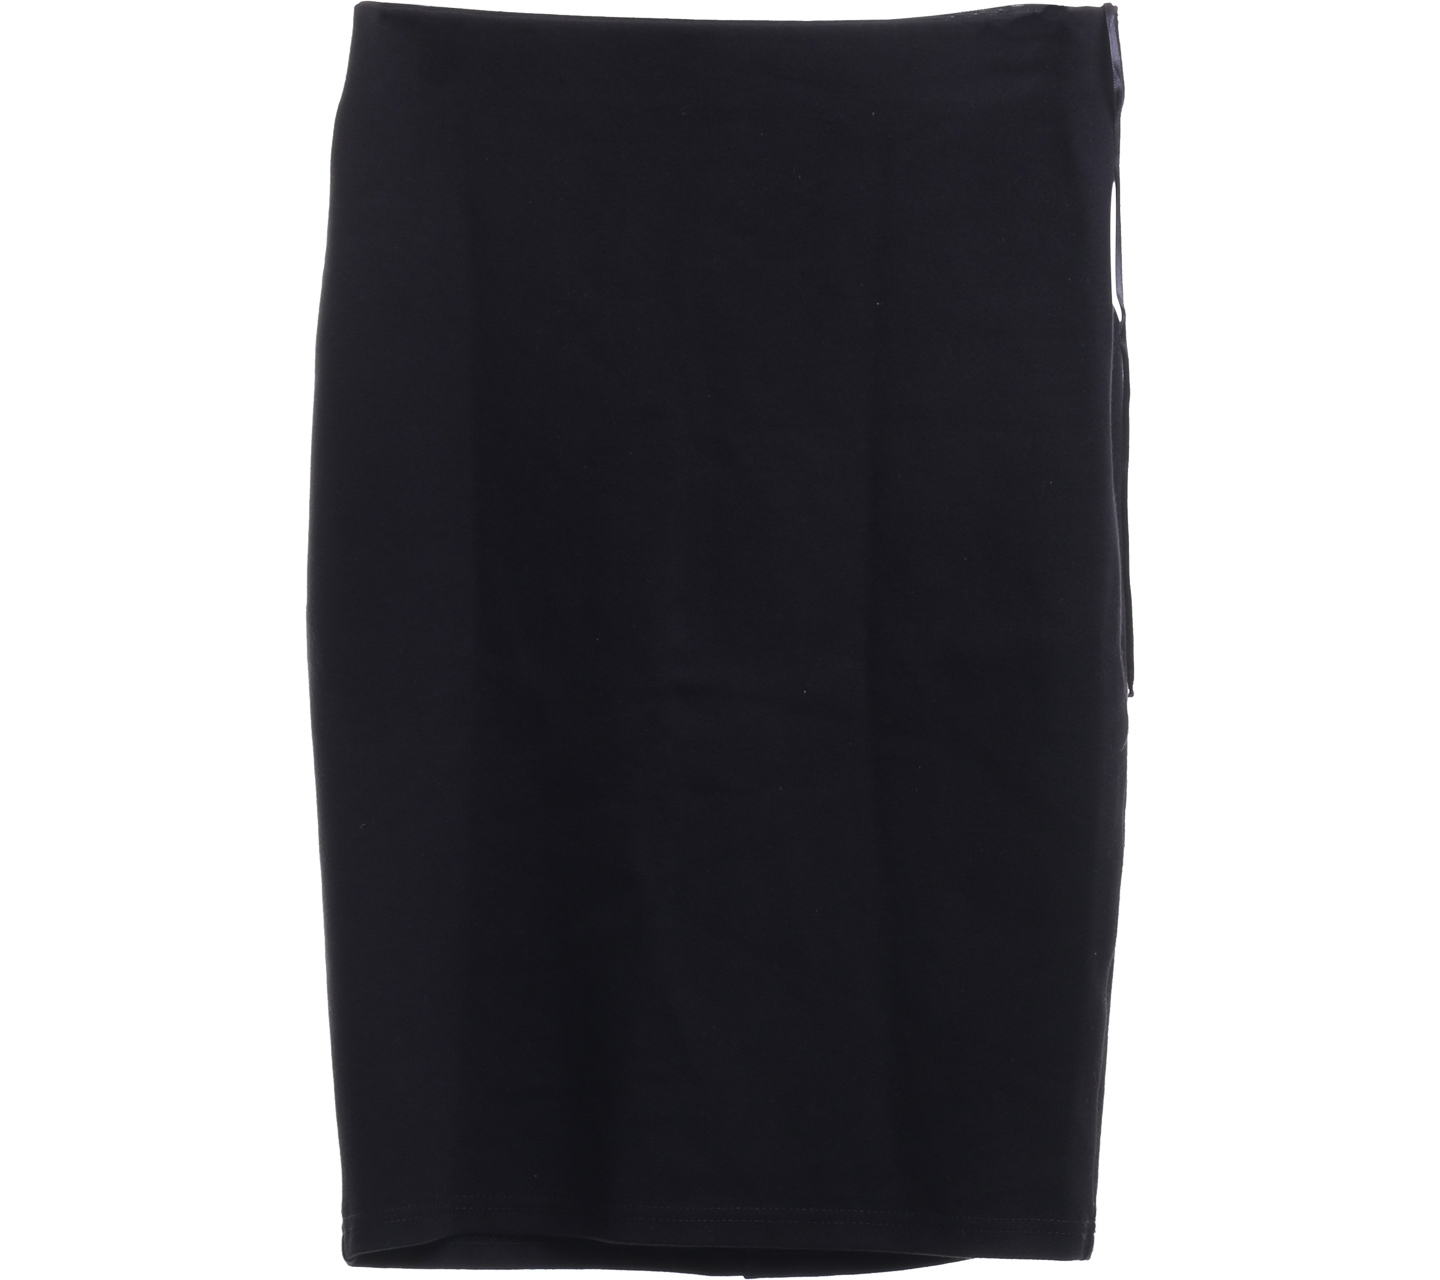 Nichii Black Mini Skirt